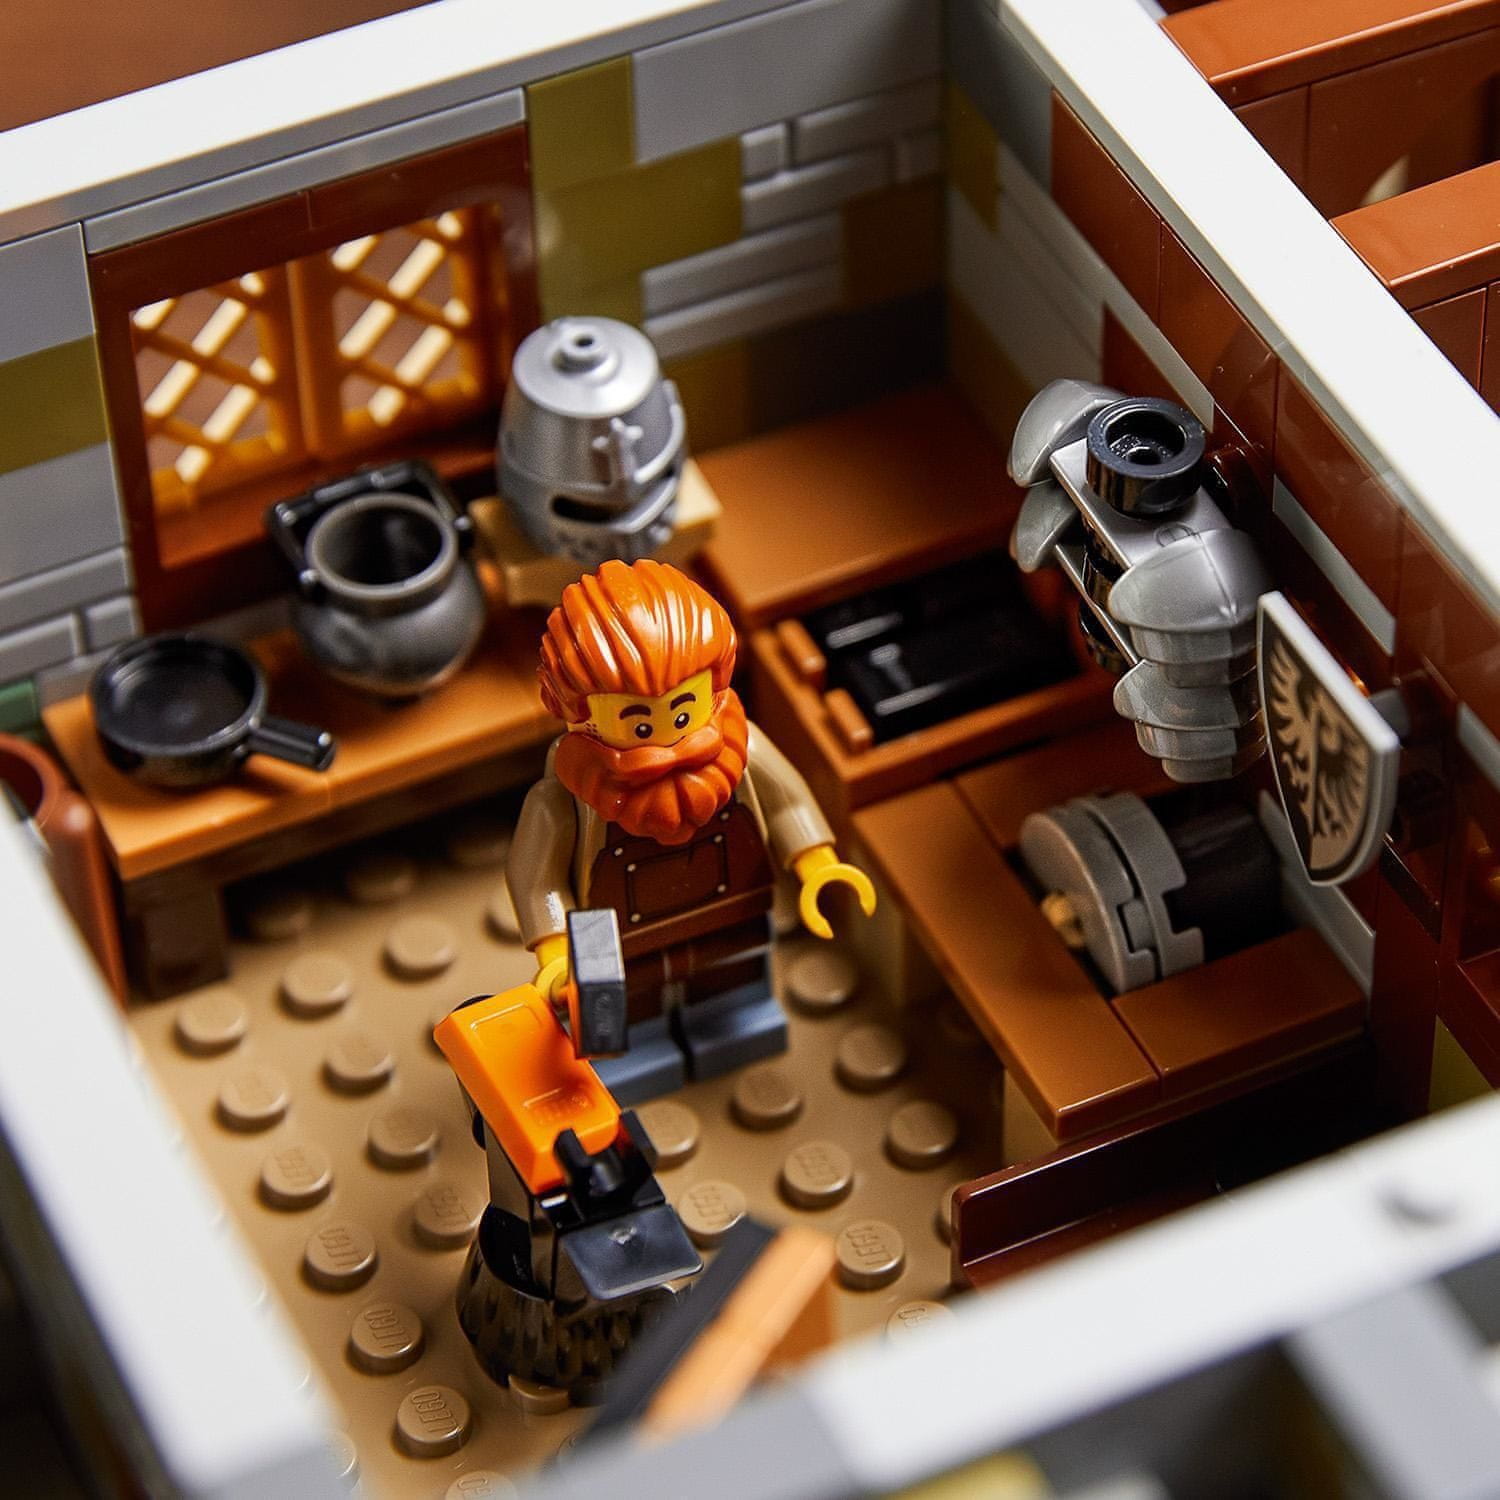 LEGO Ideas 21325 Středověká kovárna